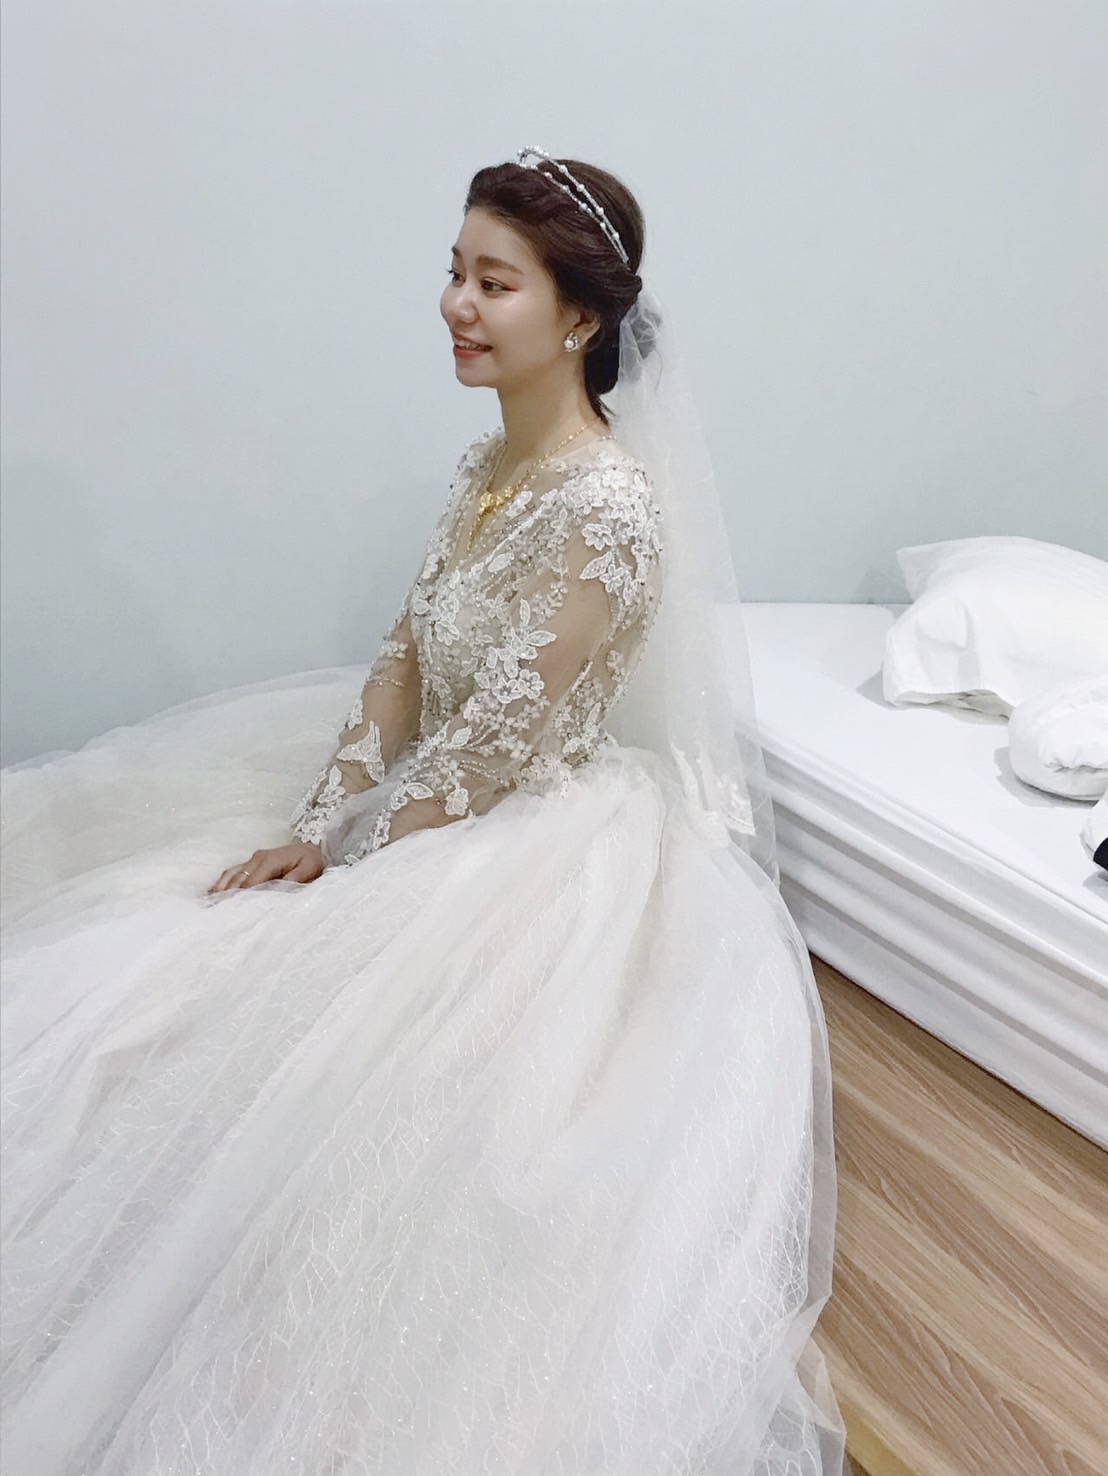 眼型調整、韓系妝容、皇冠造型、婚宴造型、白紗造型、編髮、文定造型、花飾品